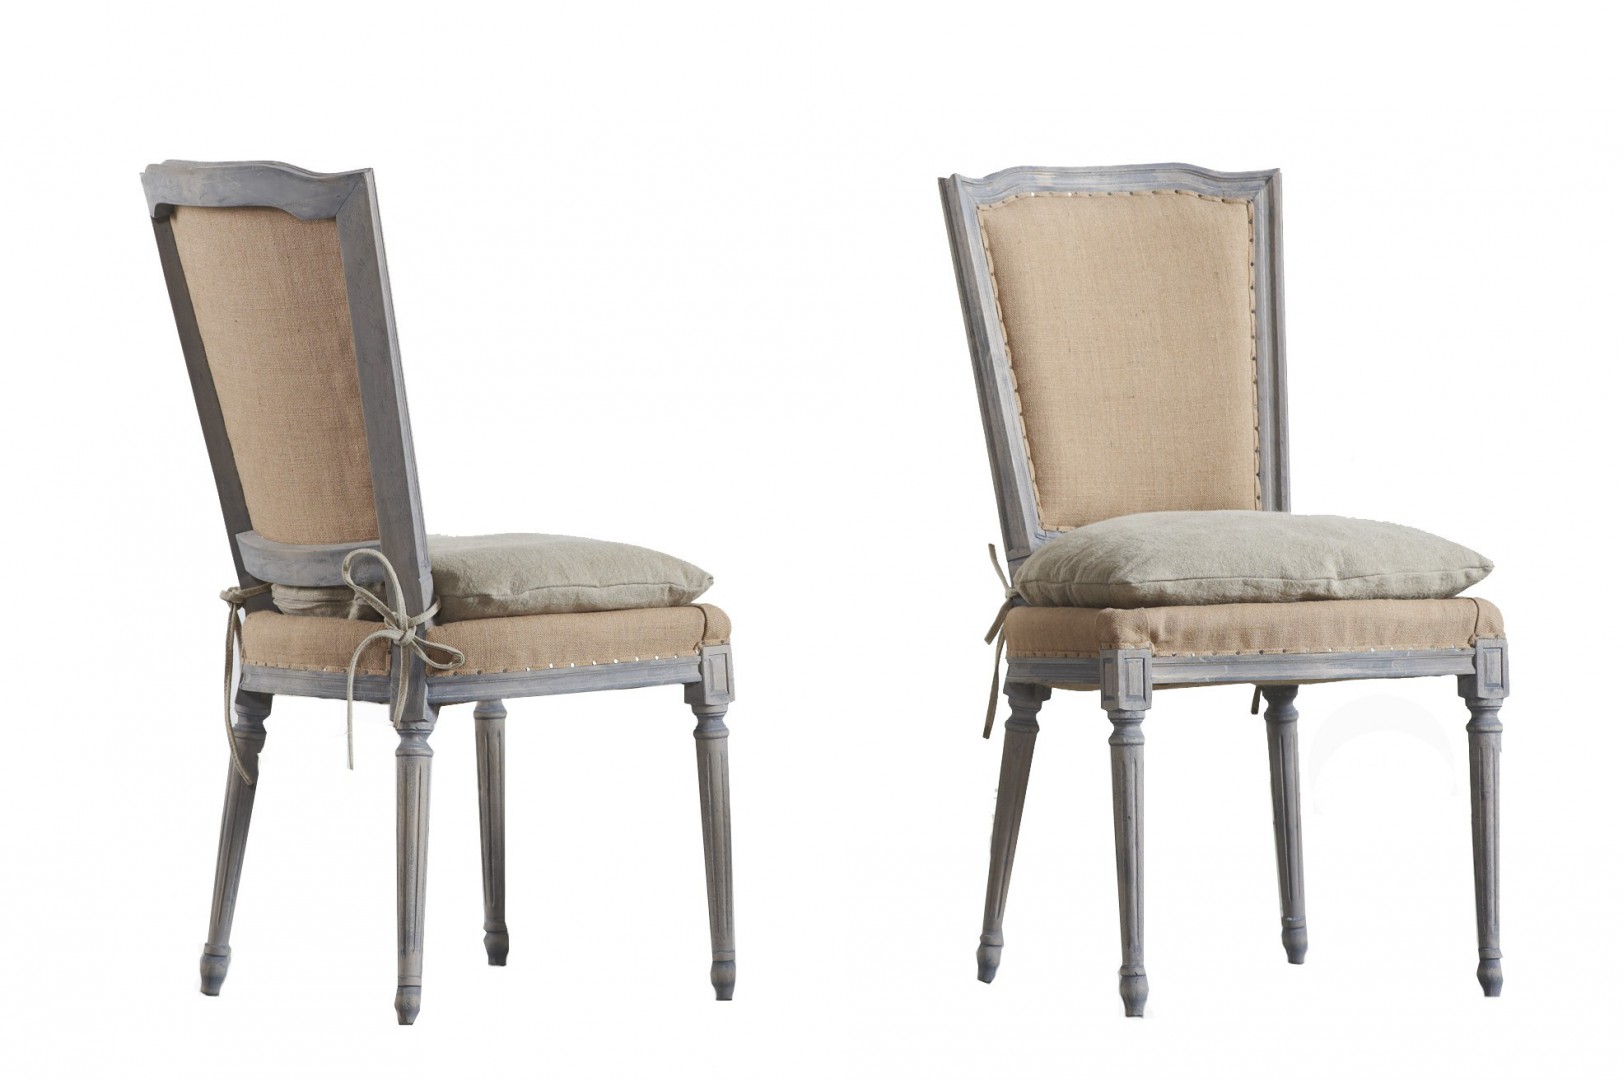 Krzesła w rustykalnym stylu będą ciekawie się prezentowały przy nowoczesnym stole. Fot. Dialma Brown